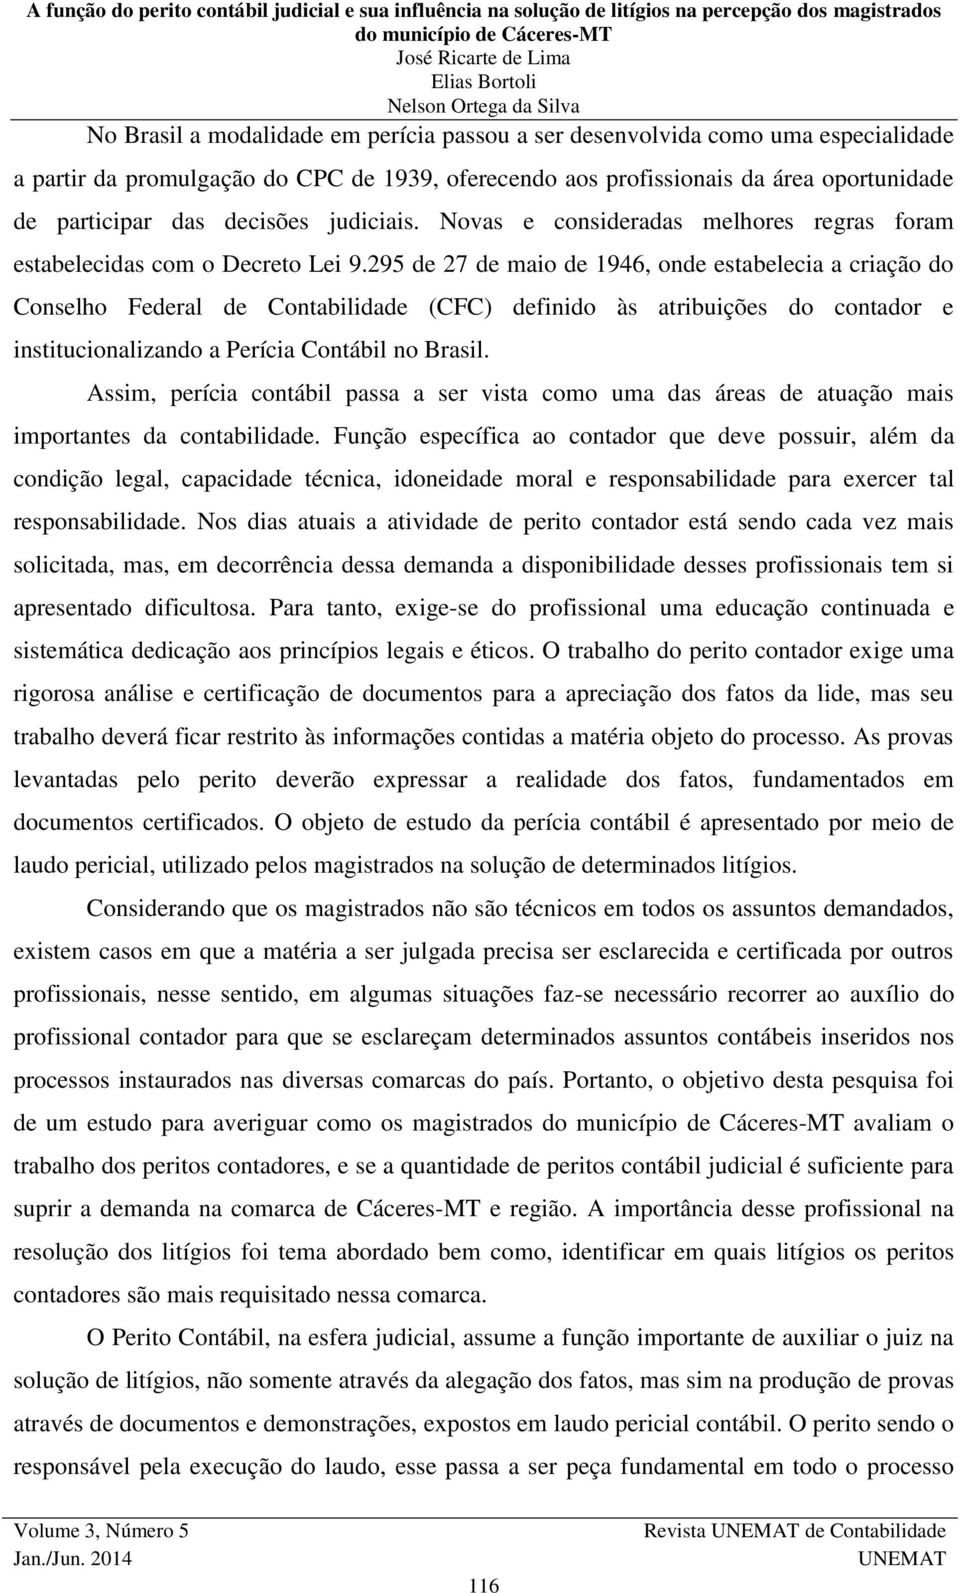 295 de 27 de maio de 1946, onde estabelecia a criação do Conselho Federal de Contabilidade (CFC) definido às atribuições do contador e institucionalizando a Perícia Contábil no Brasil.